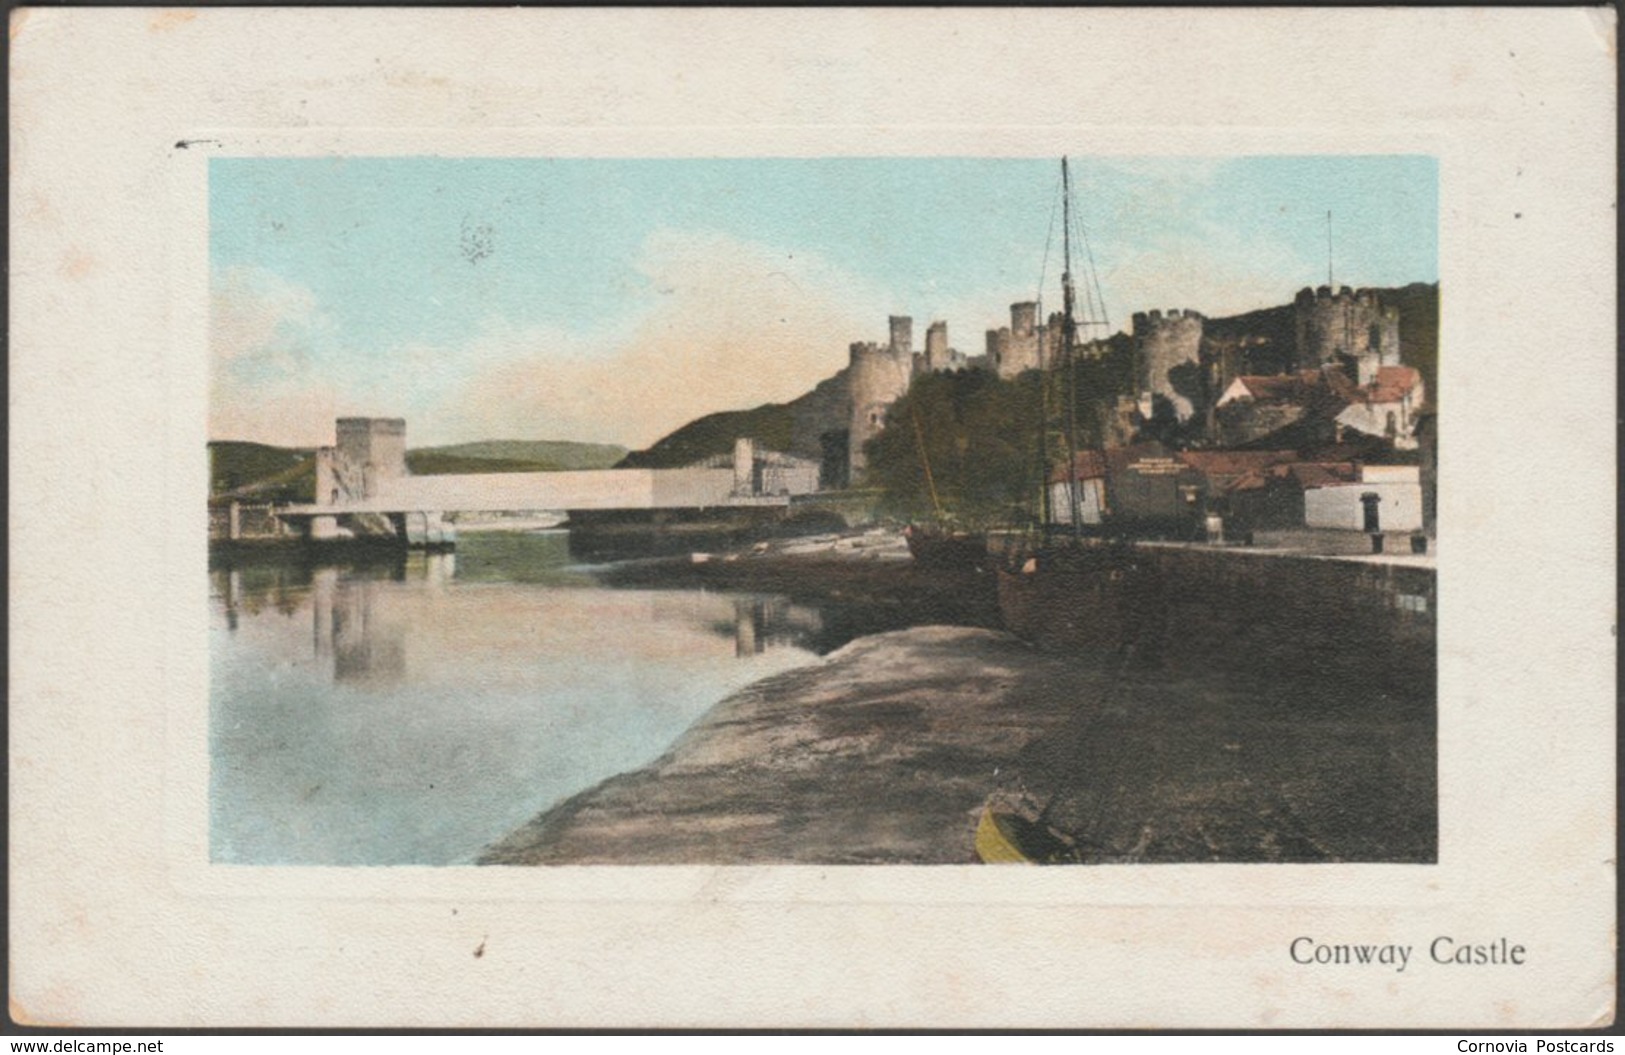 Conway Castle, Caernarvonshire, 1908 - Dennis Postcard - Caernarvonshire